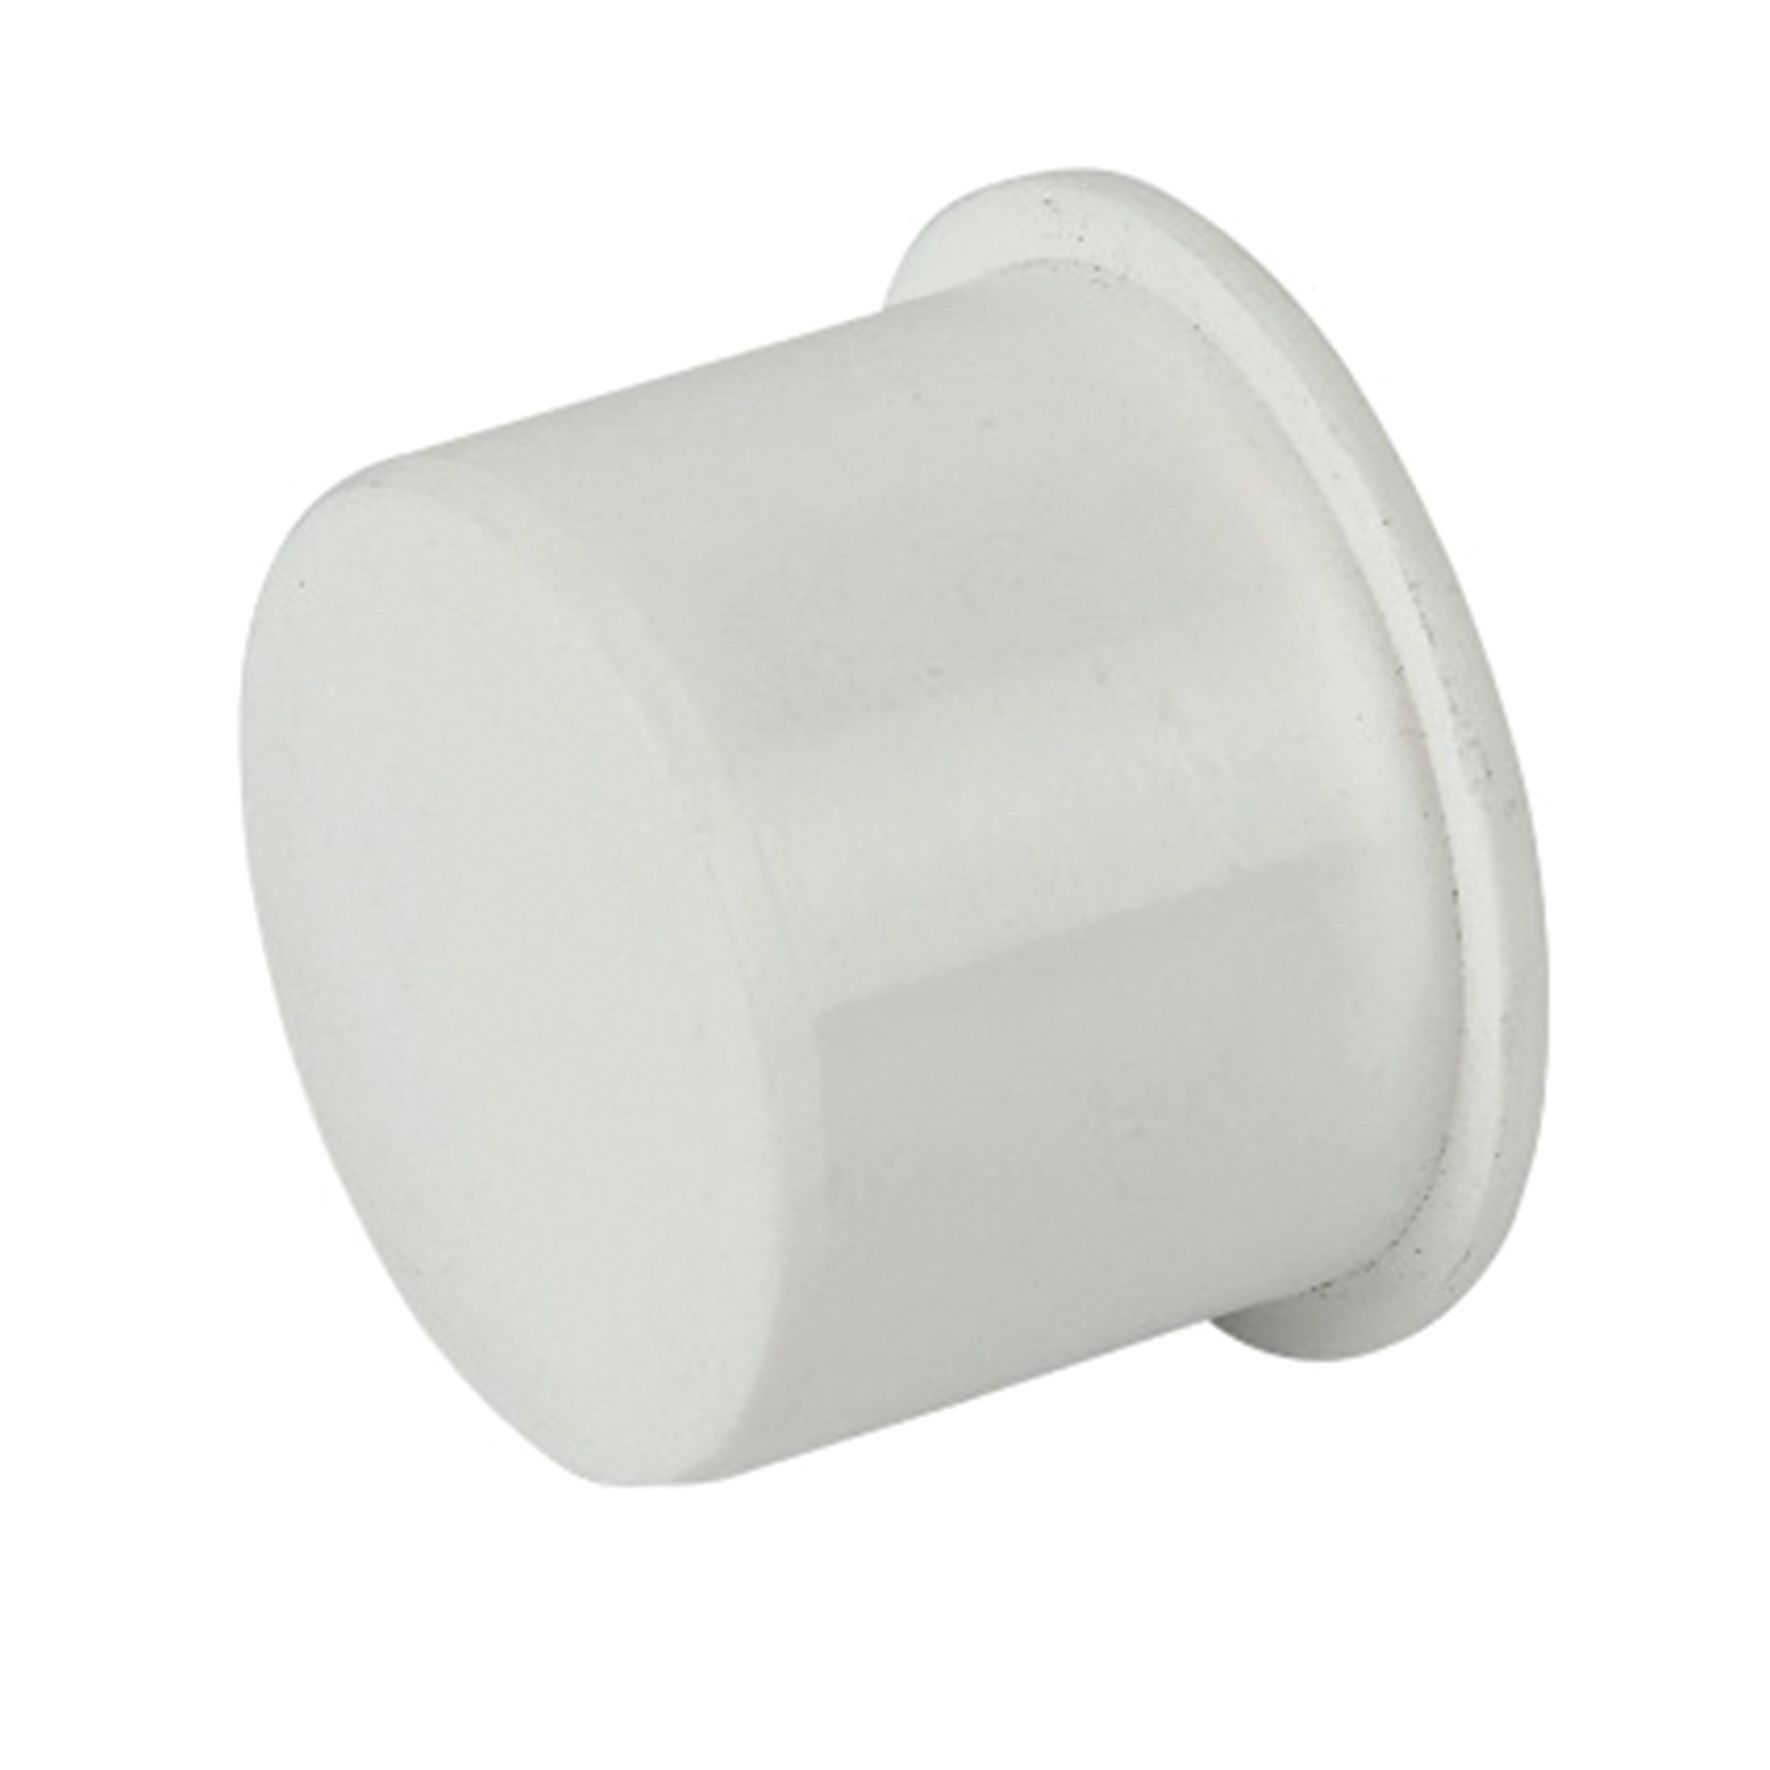 Image of FloPlast WP31W Push-Fit Waste Socket Plug - White 40mm